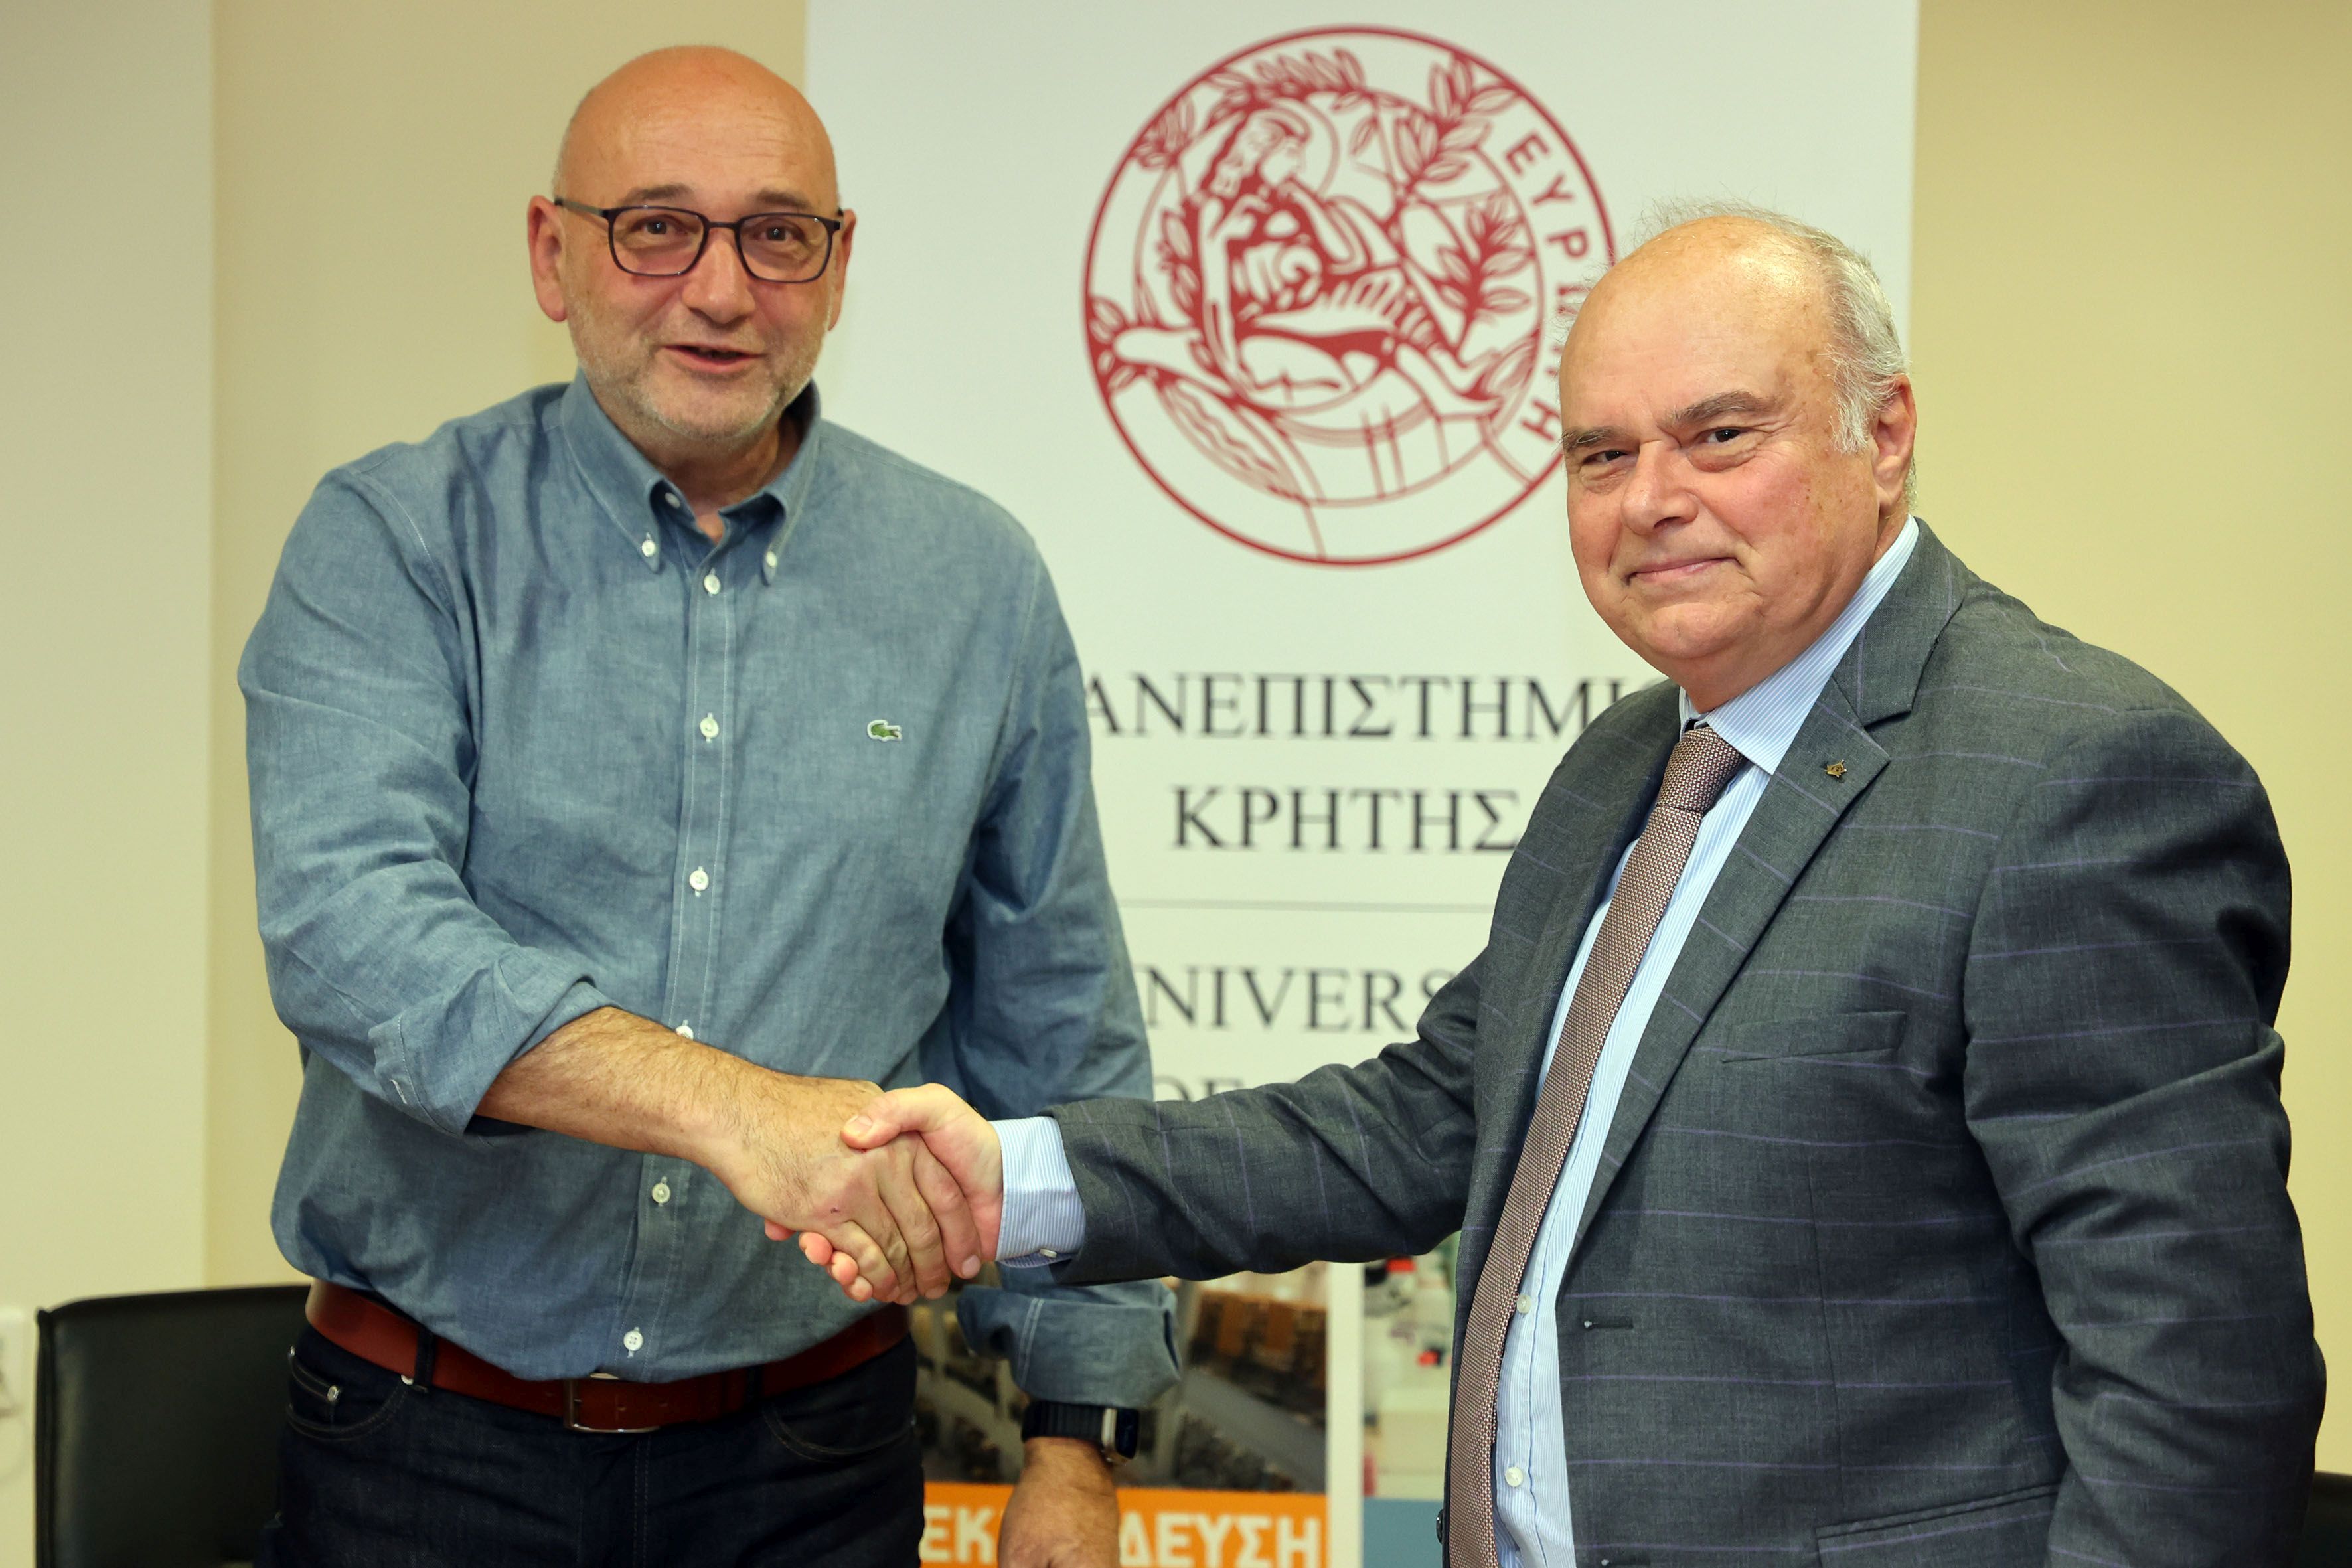 Μνημόνιο συνεργασίας μεταξύ Πανεπιστημίου Κρήτης και Επιμελητηρίου Ηρακλείου